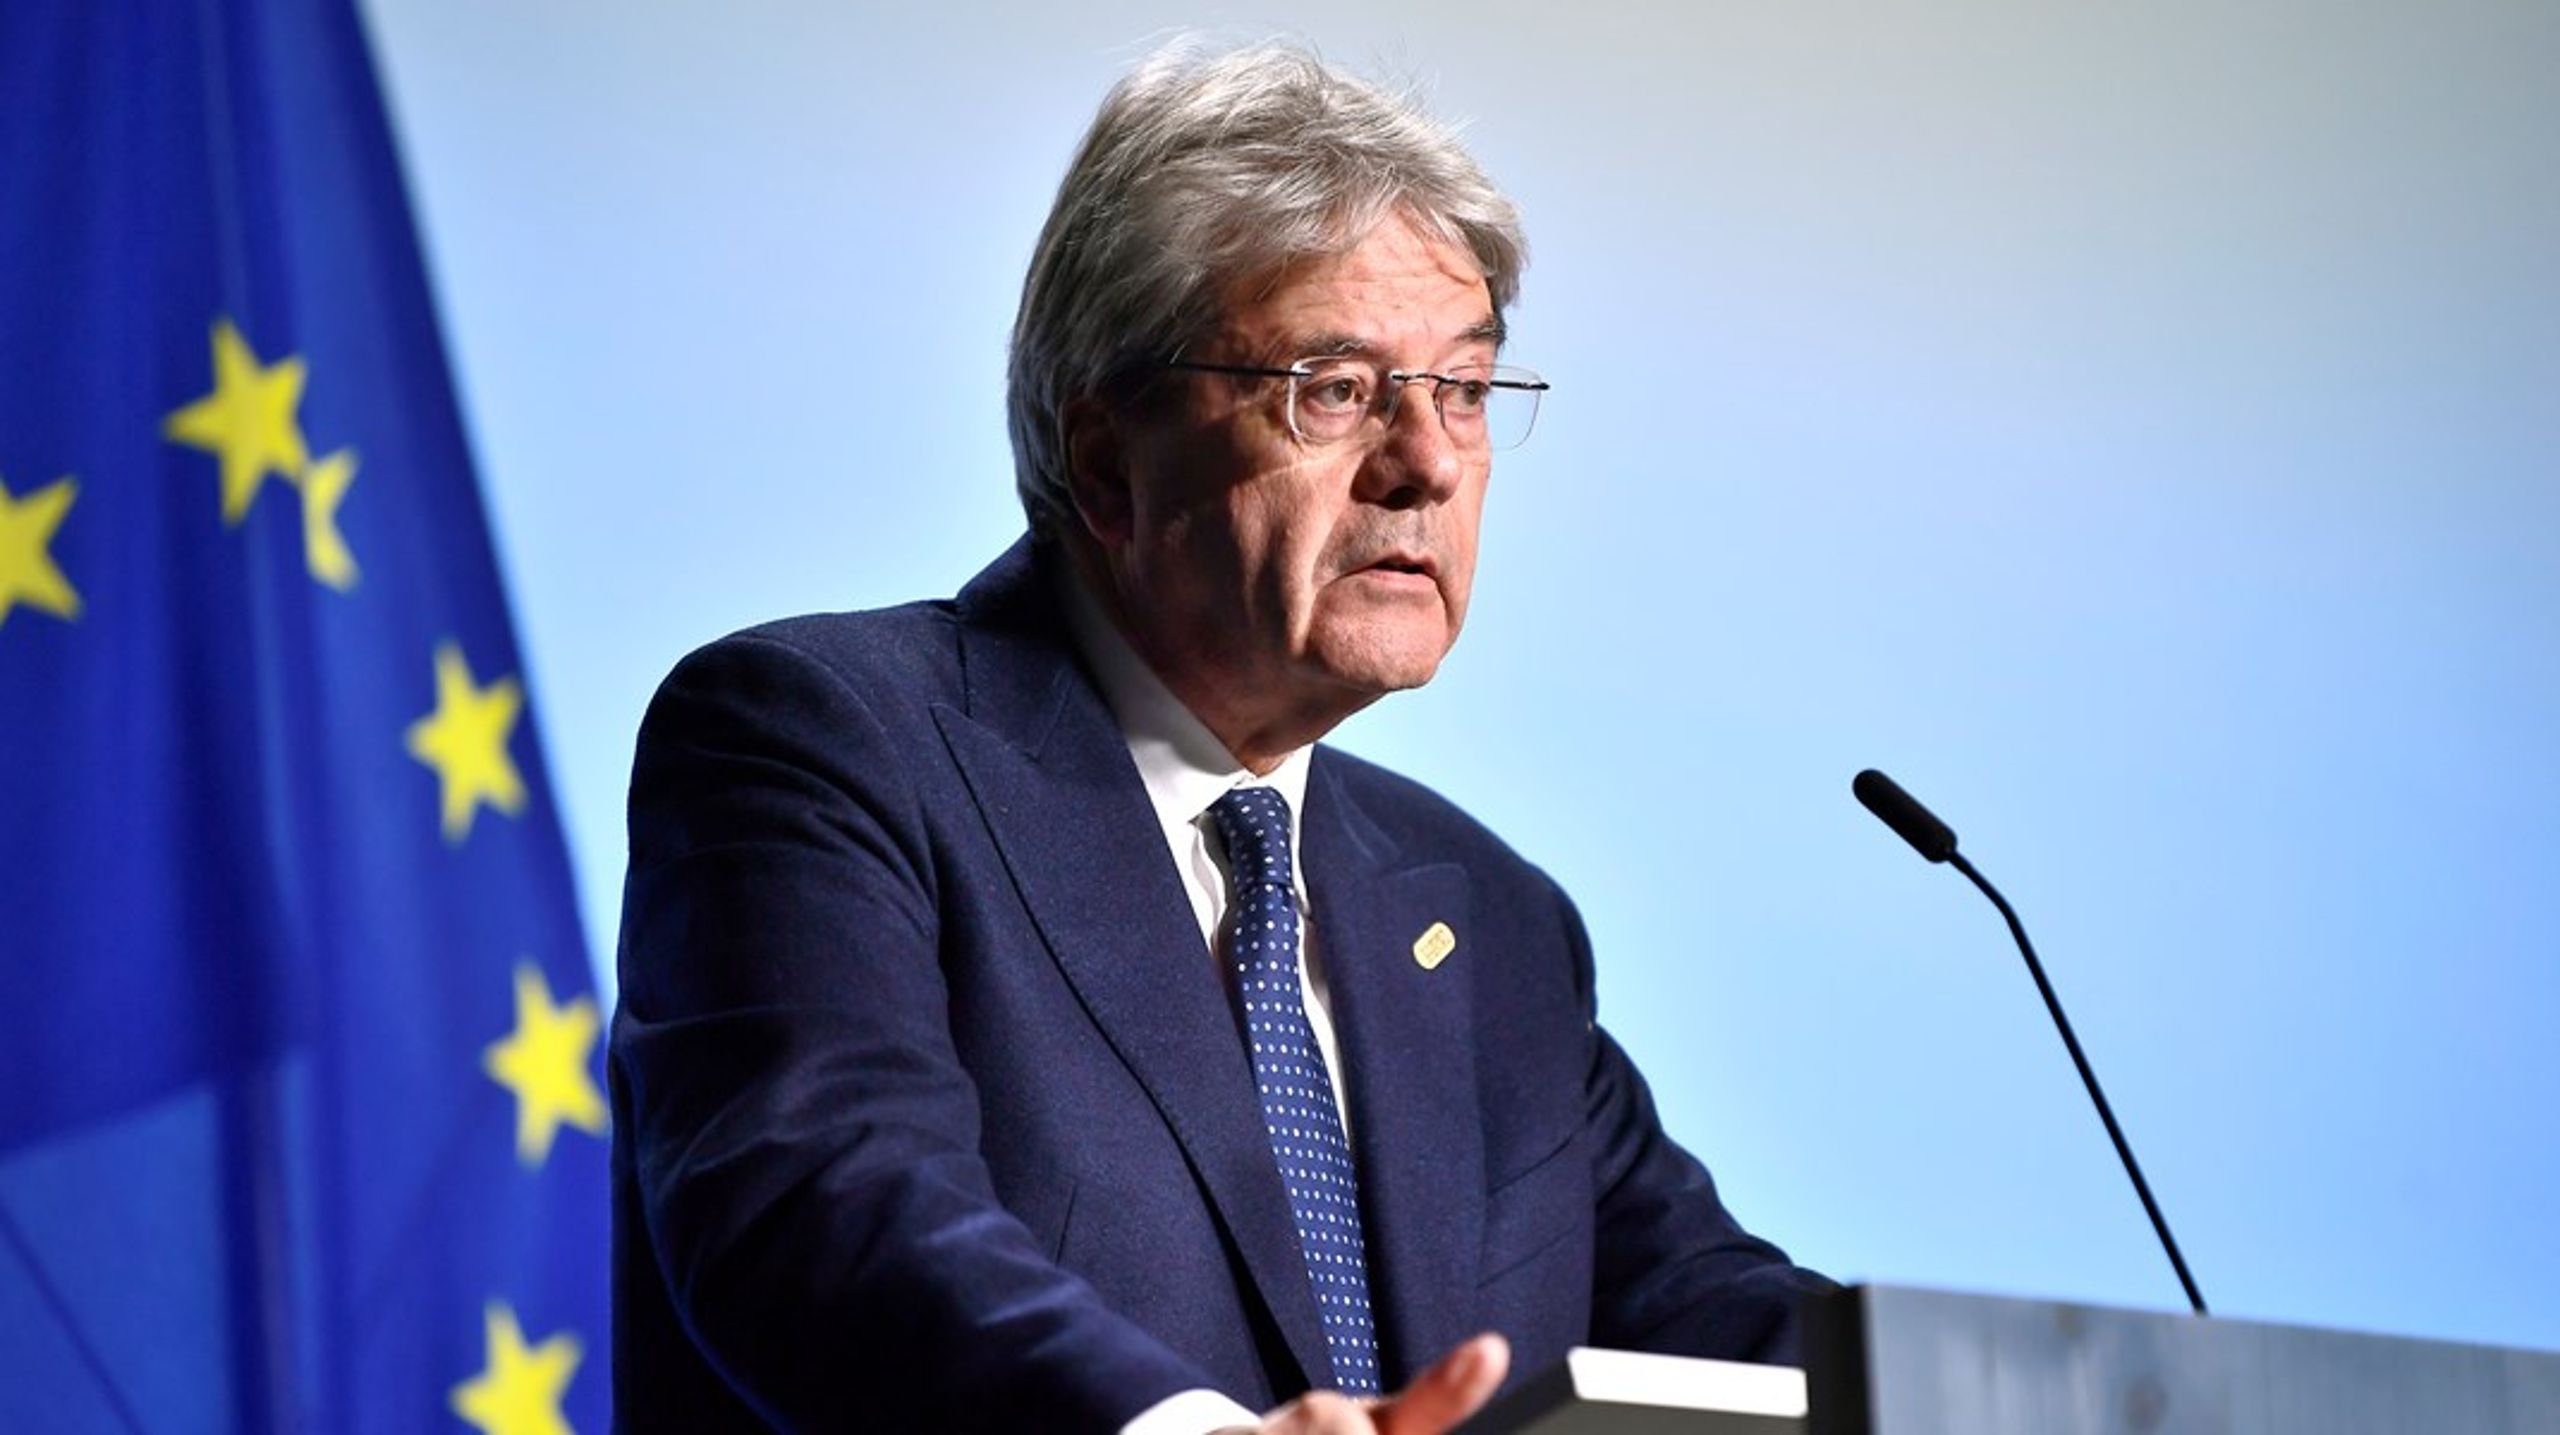 EU:s ekonomikommissionär&nbsp;Paolo Gentiloni&nbsp;presenterade rekommendationerna för EU-länderna för 2023 under onsdagen.&nbsp;